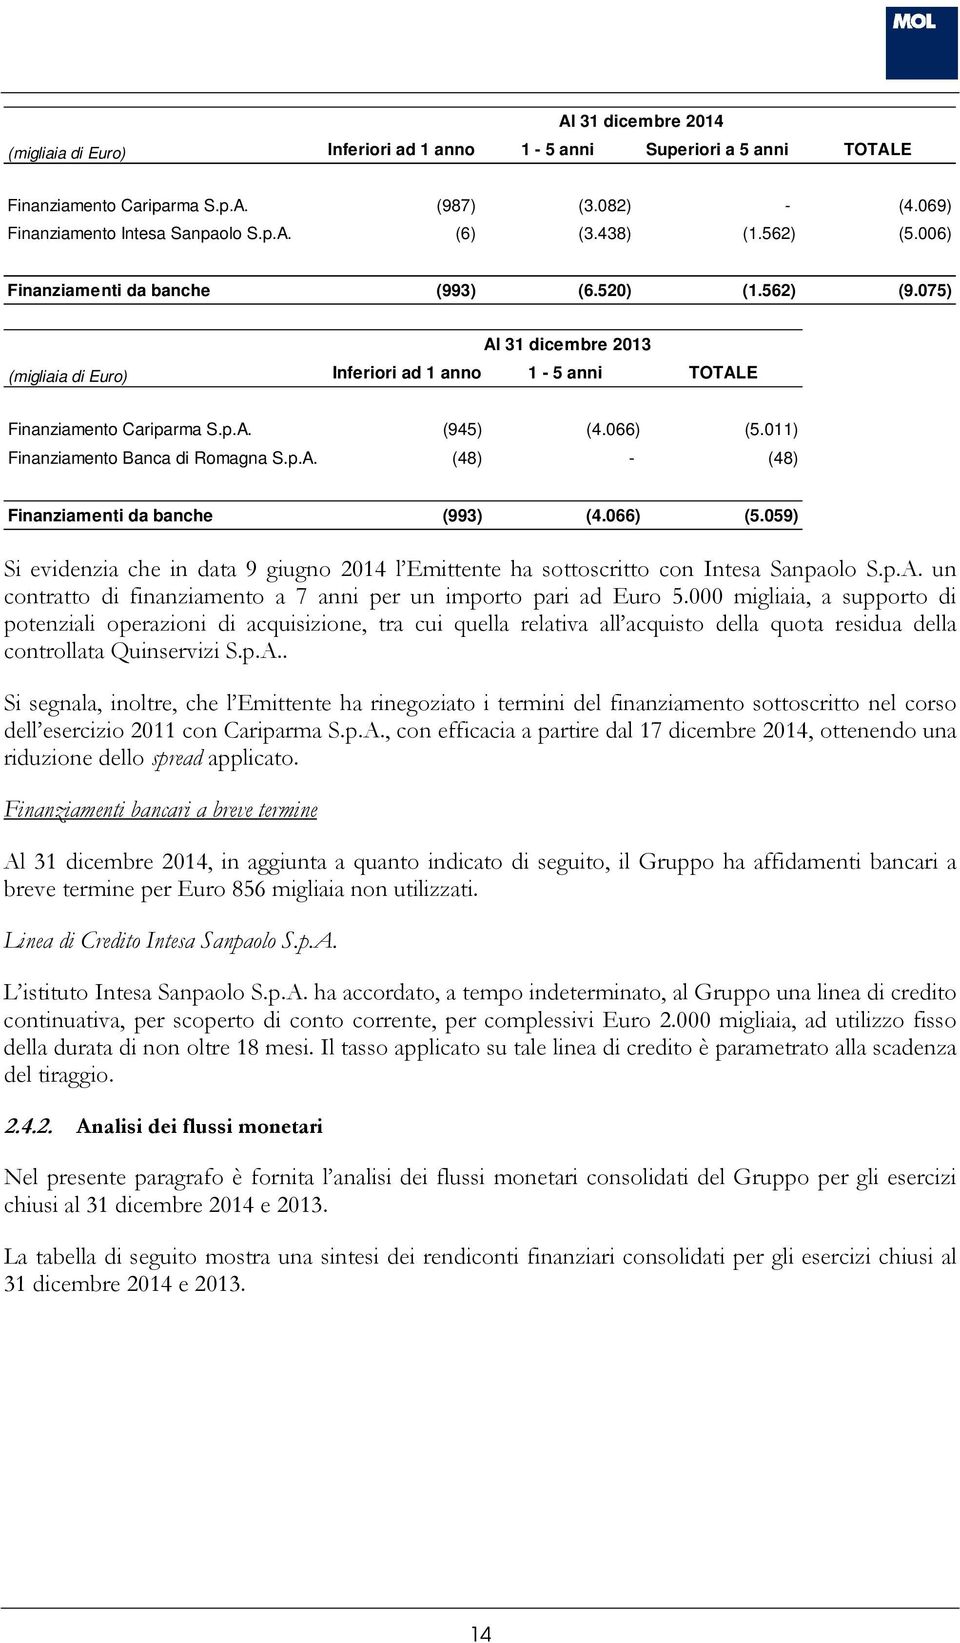 011) Finanziamento Banca di Romagna S.p.A. (48) - (48) Finanziamenti da banche (993) (4.066) (5.059) Si evidenzia che in data 9 giugno 2014 l Emittente ha sottoscritto con Intesa Sanpaolo S.p.A. un contratto di finanziamento a 7 anni per un importo pari ad Euro 5.